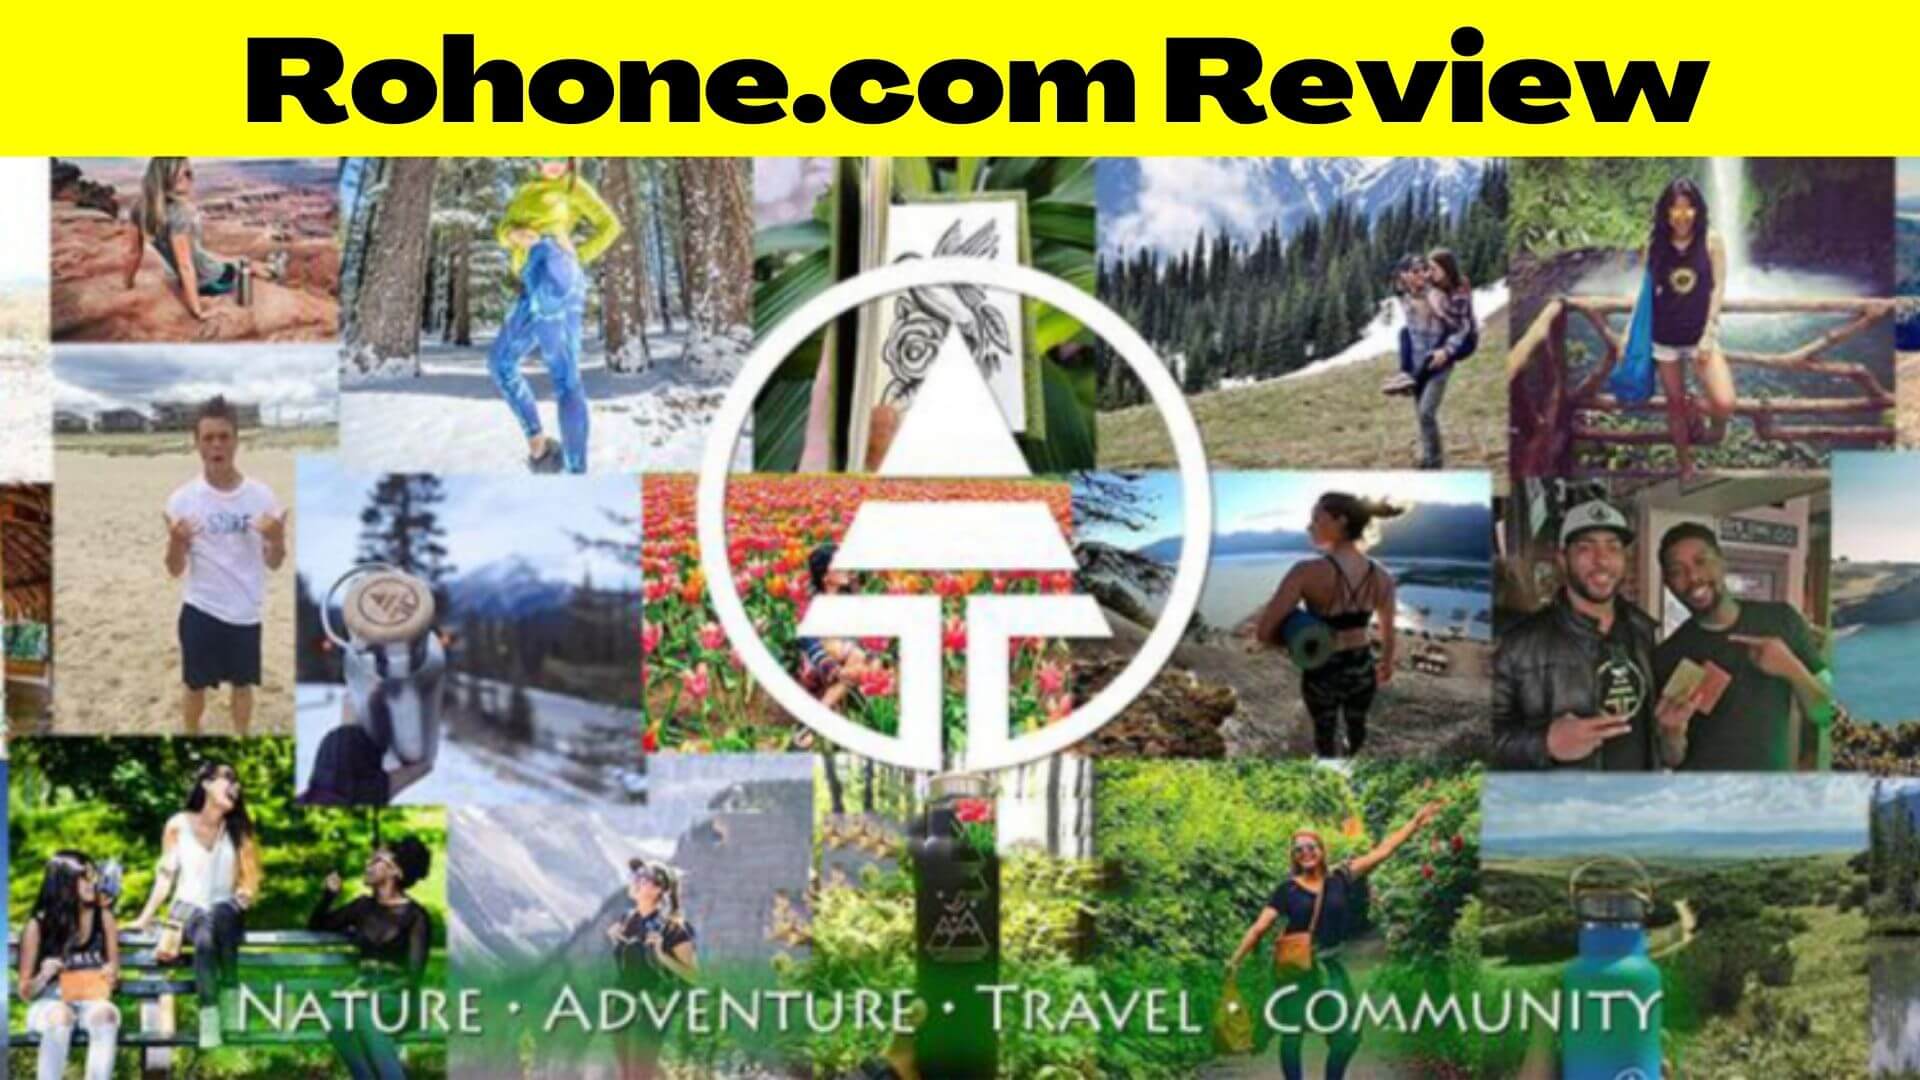 Rohone.com Review